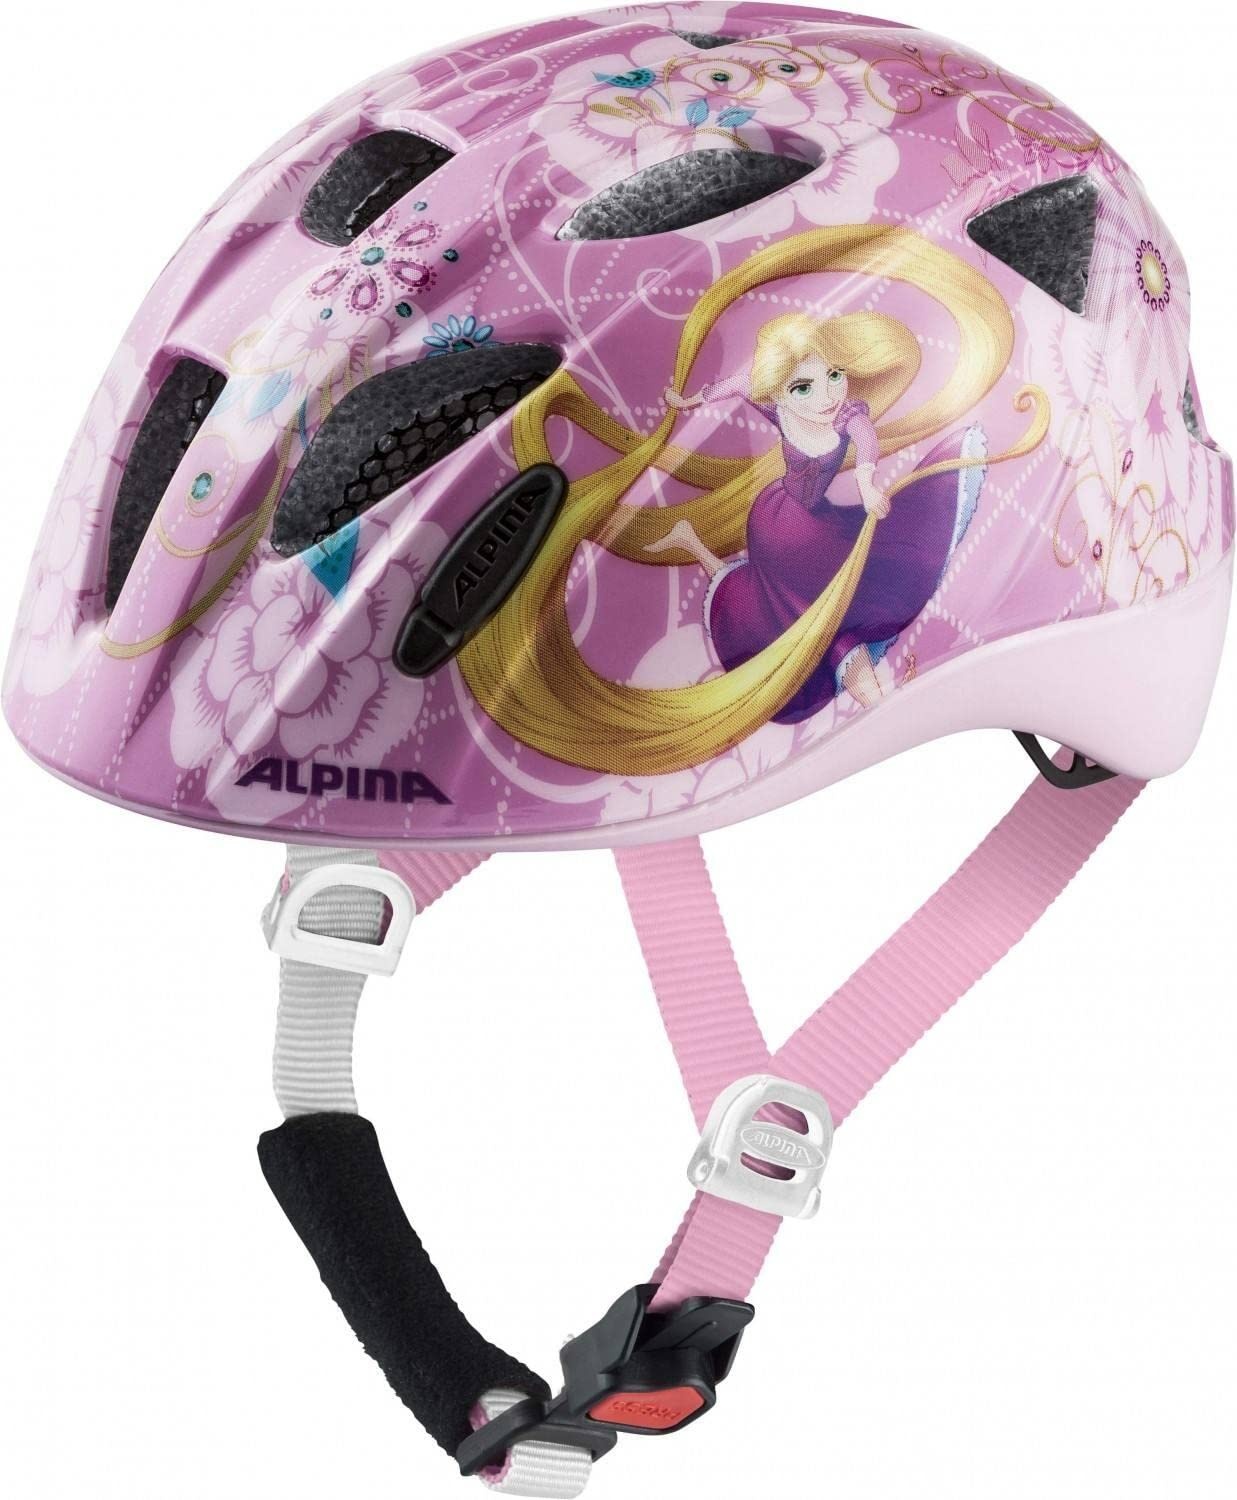 ALPINA XIMO DISNEY - Leichter, Sicherer & Bruchfester Disney Fahrradhelm Mit Optionalen LED-Licht Für Kinder, Rapunzel gloss, 49-54 cm